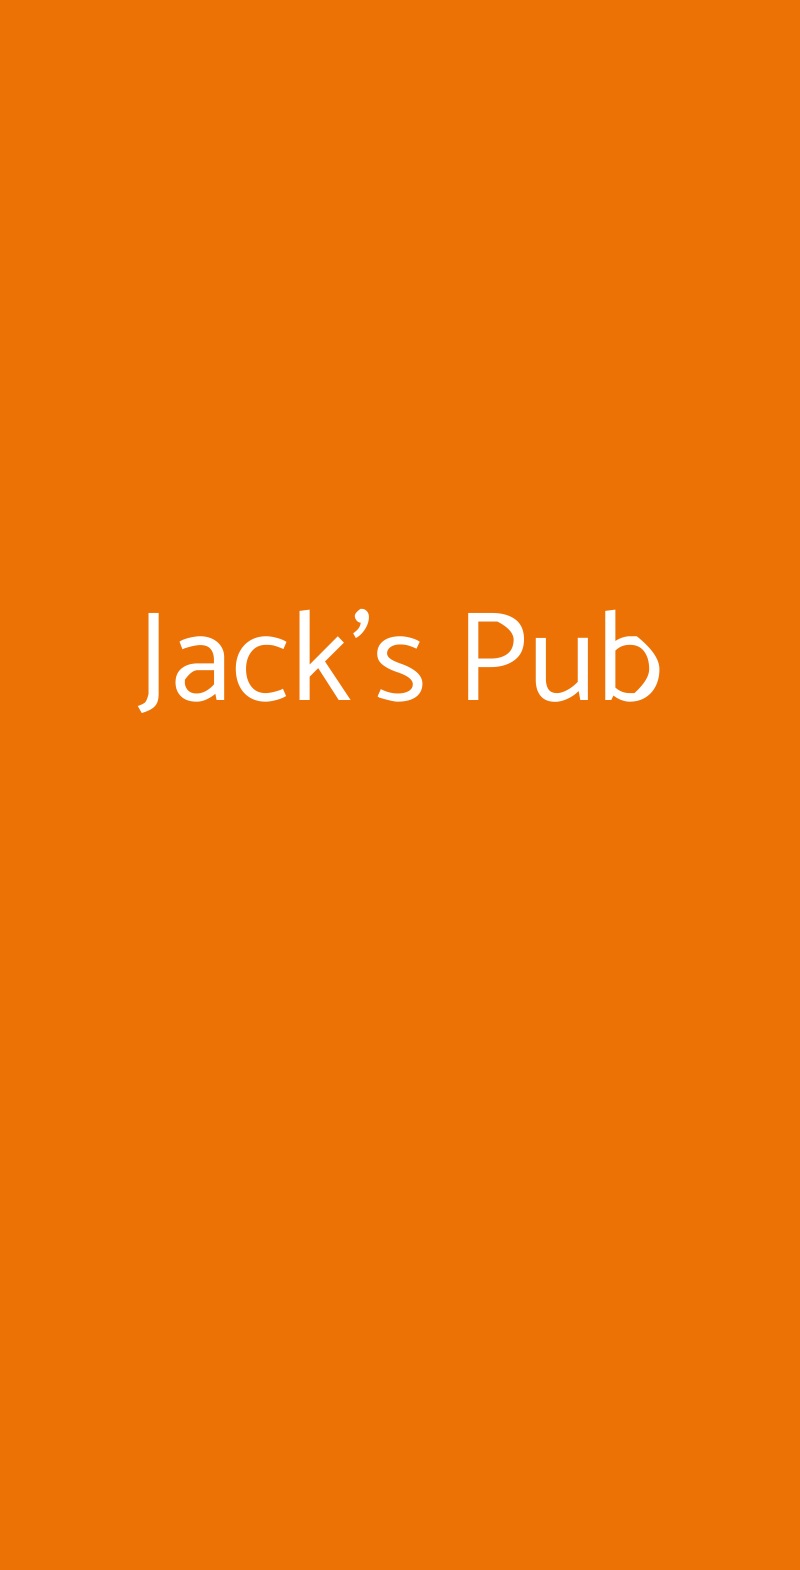 Jack's Pub Roma menù 1 pagina